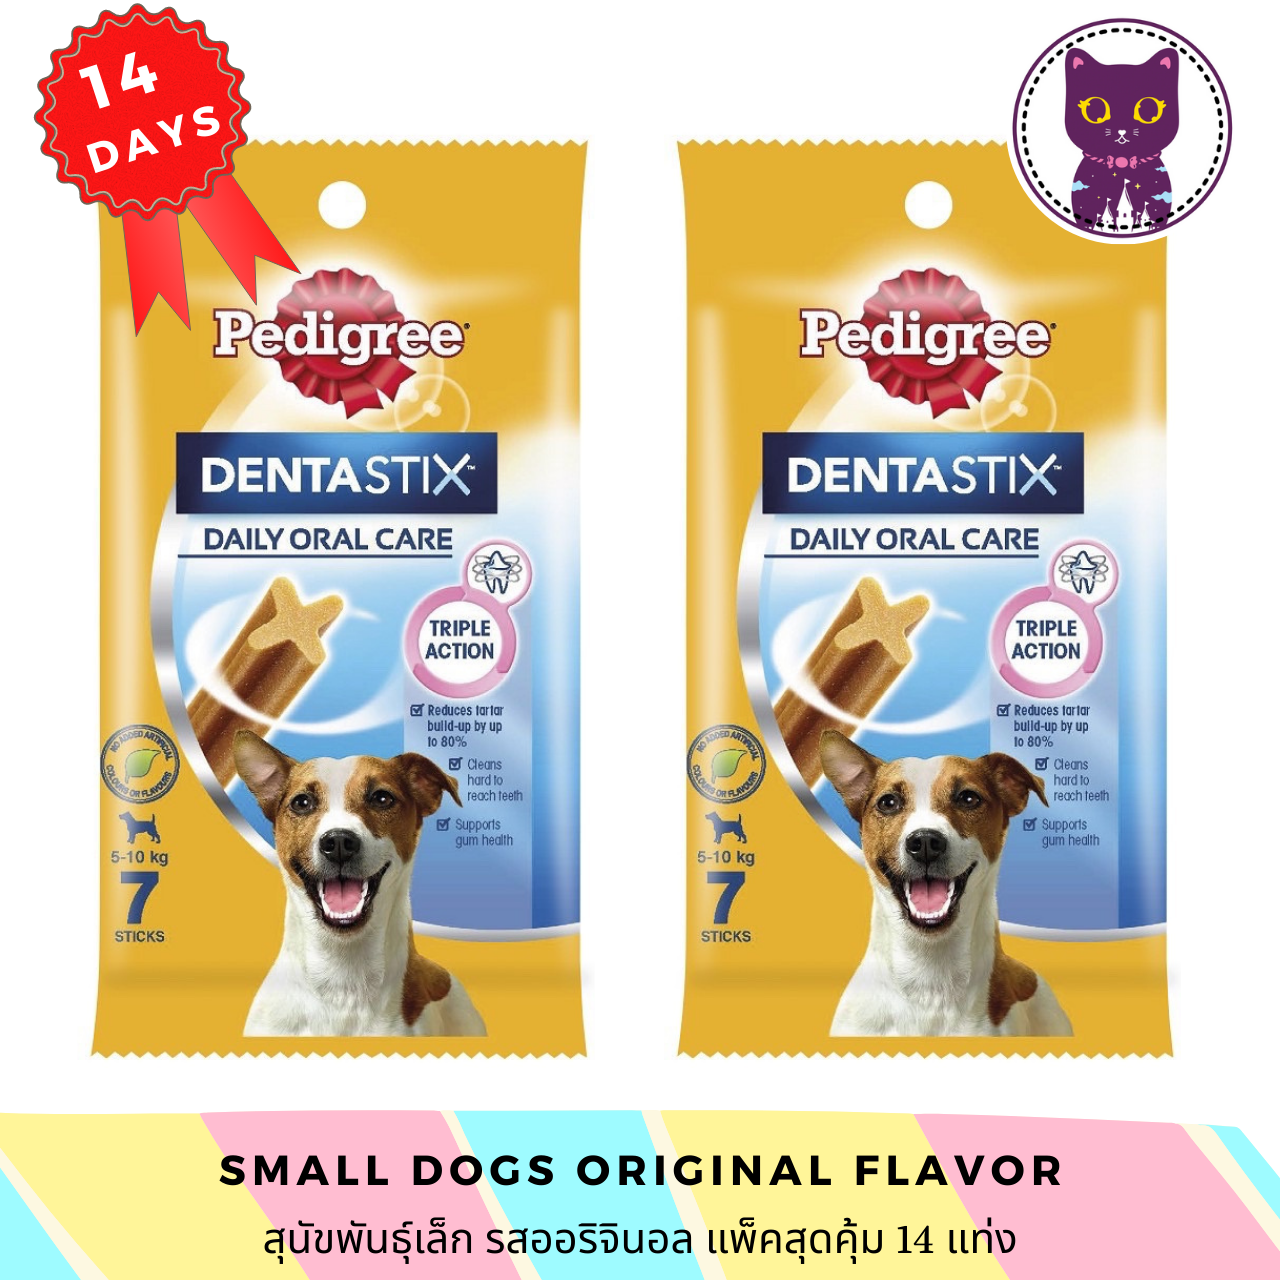 [WSP] Pedigree Denta Stix Original Flavor (Small Dogs) 14 Days เพ็ดดิกรี ขนมขัดฟันสุนัขรูปตัว X สำหรับสุนัขพันธุ์เล็กรสออริจินอล (แพ็คคู่ 14 แท่ง)